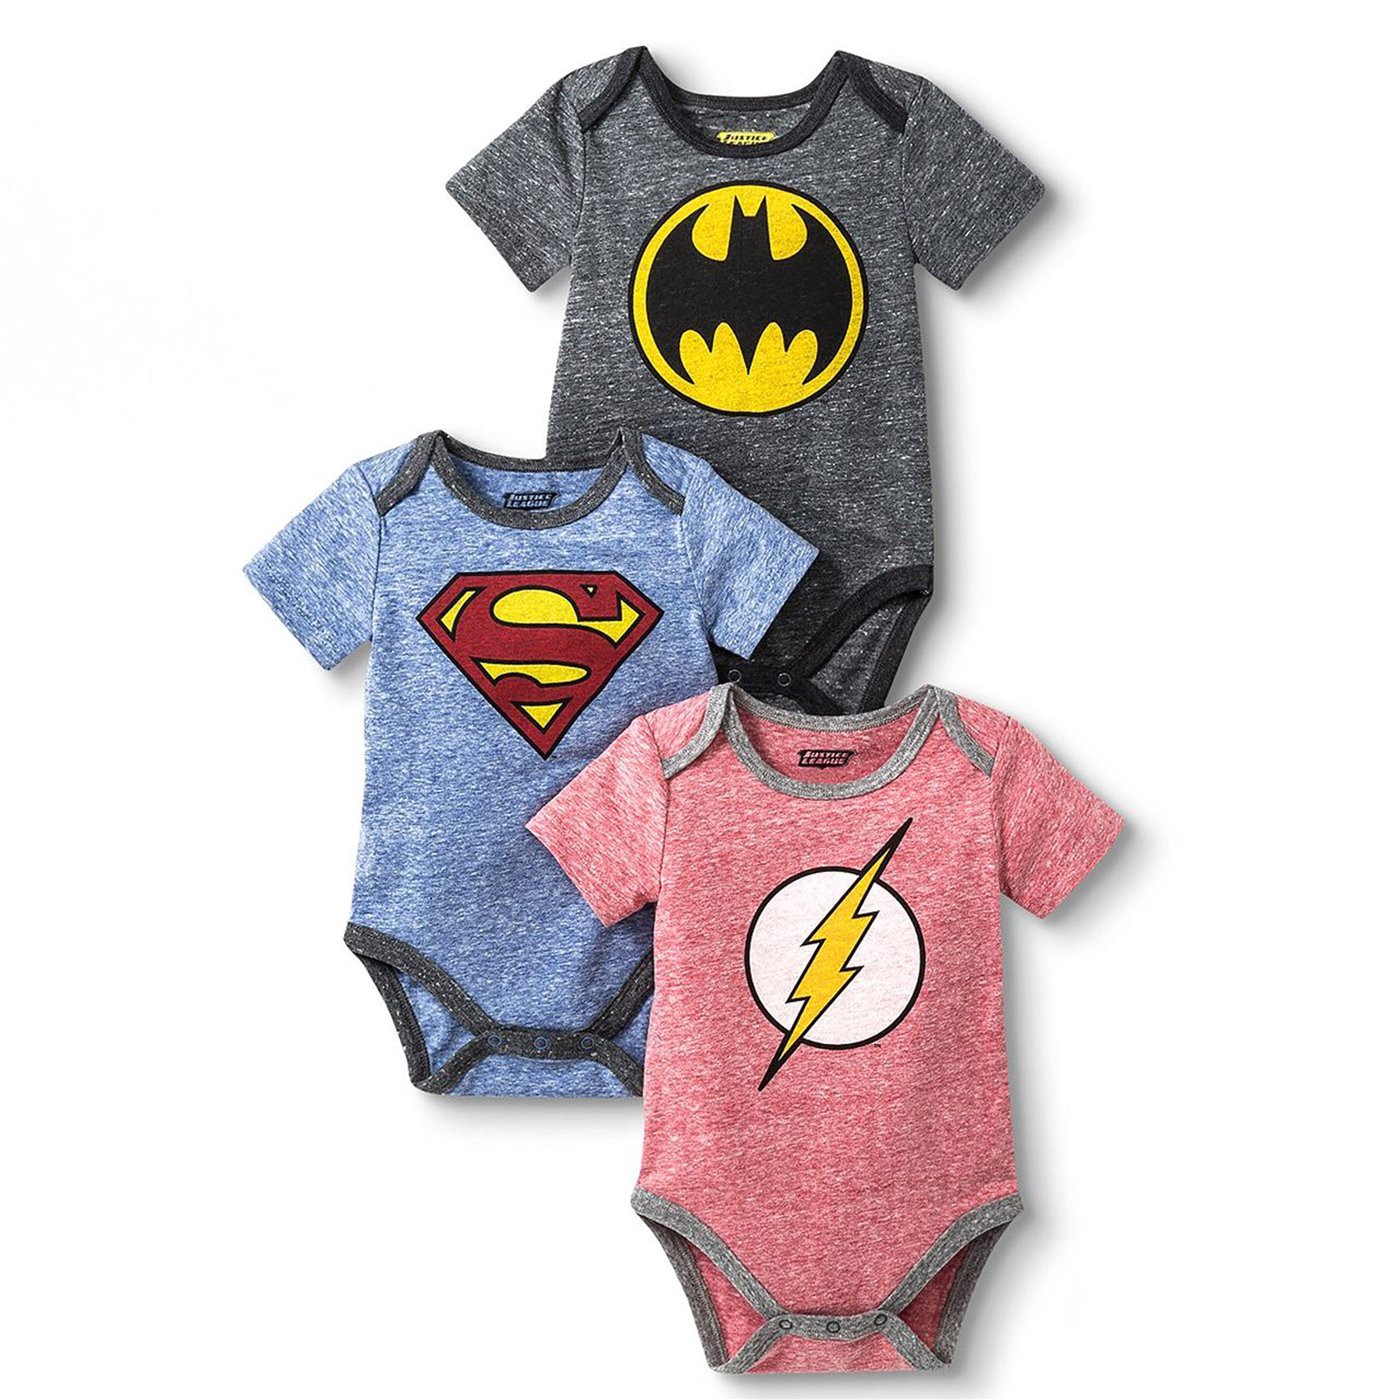 Justice League 3-Pack Infant Bodysuit Set